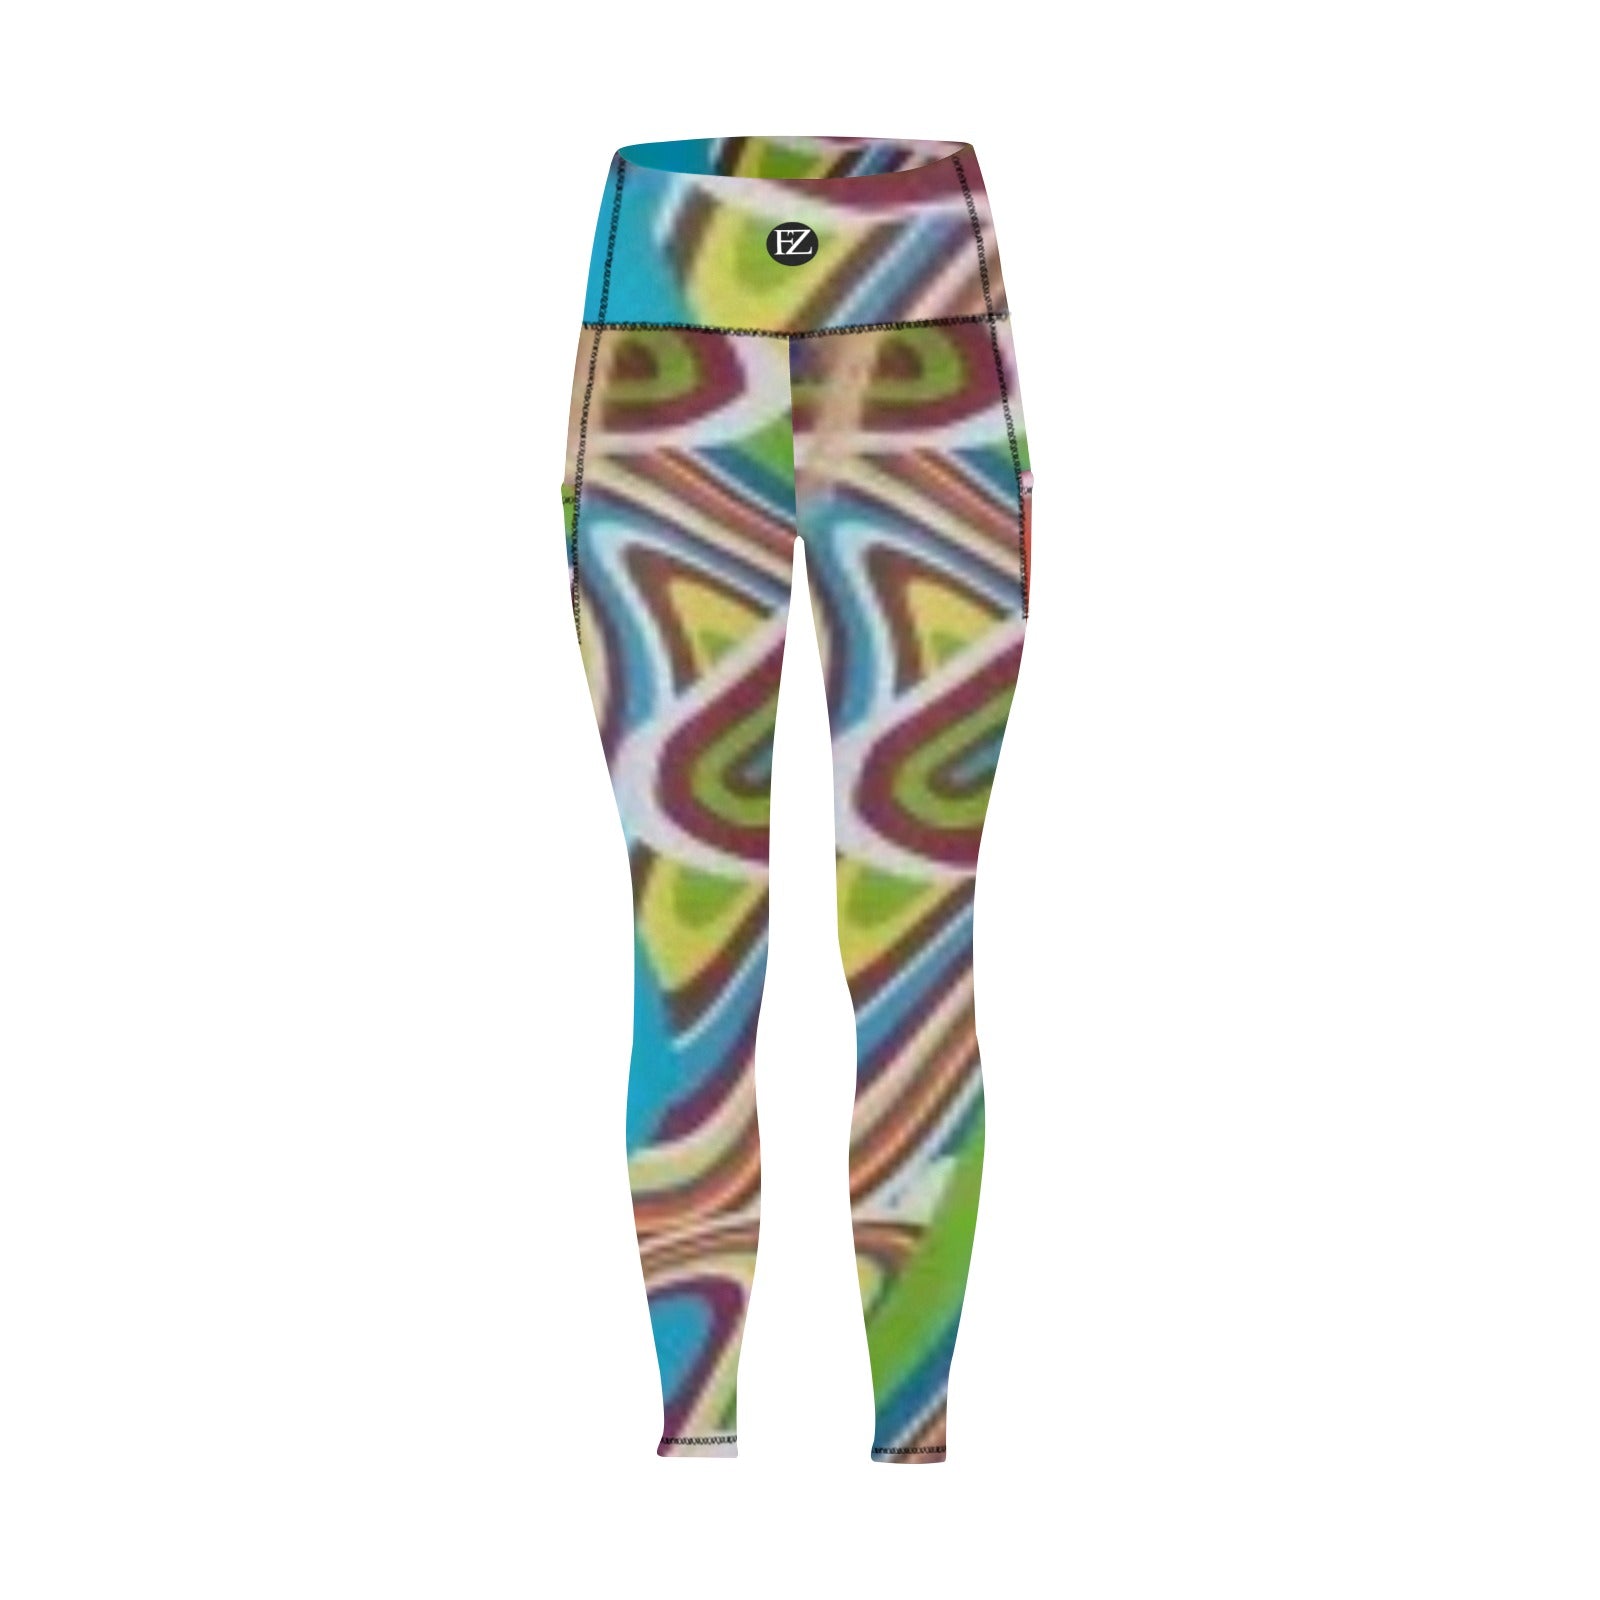 fz women's leggings 7 all over print high waist leggings with pockets (modell56)